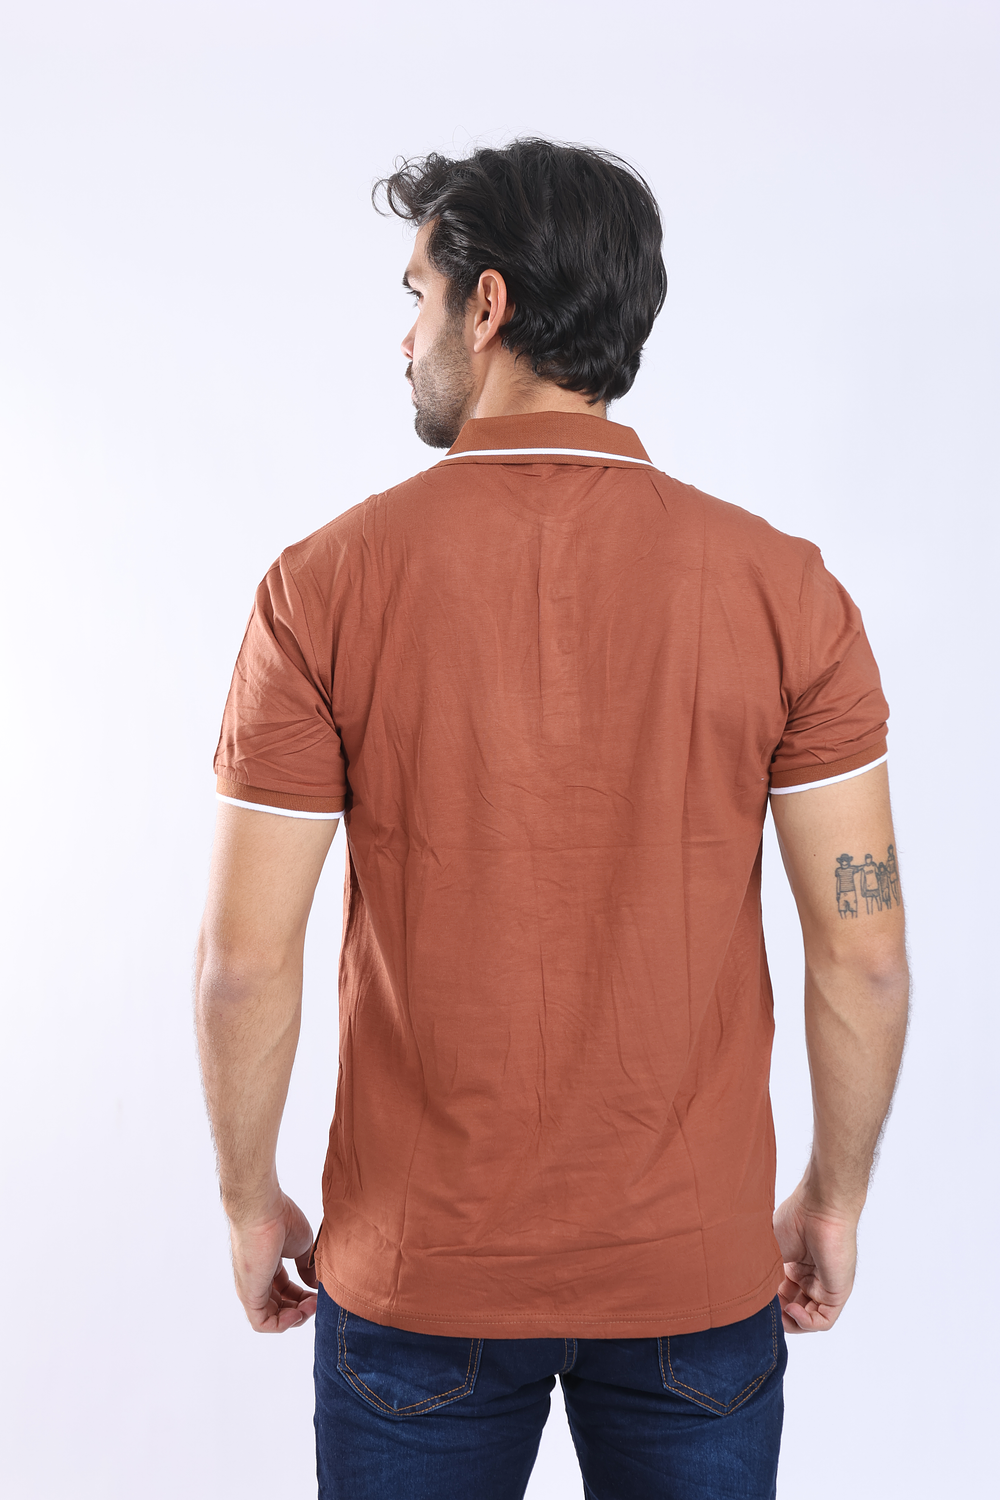 Camisetas tipo polo para hombre - TERRACOTA